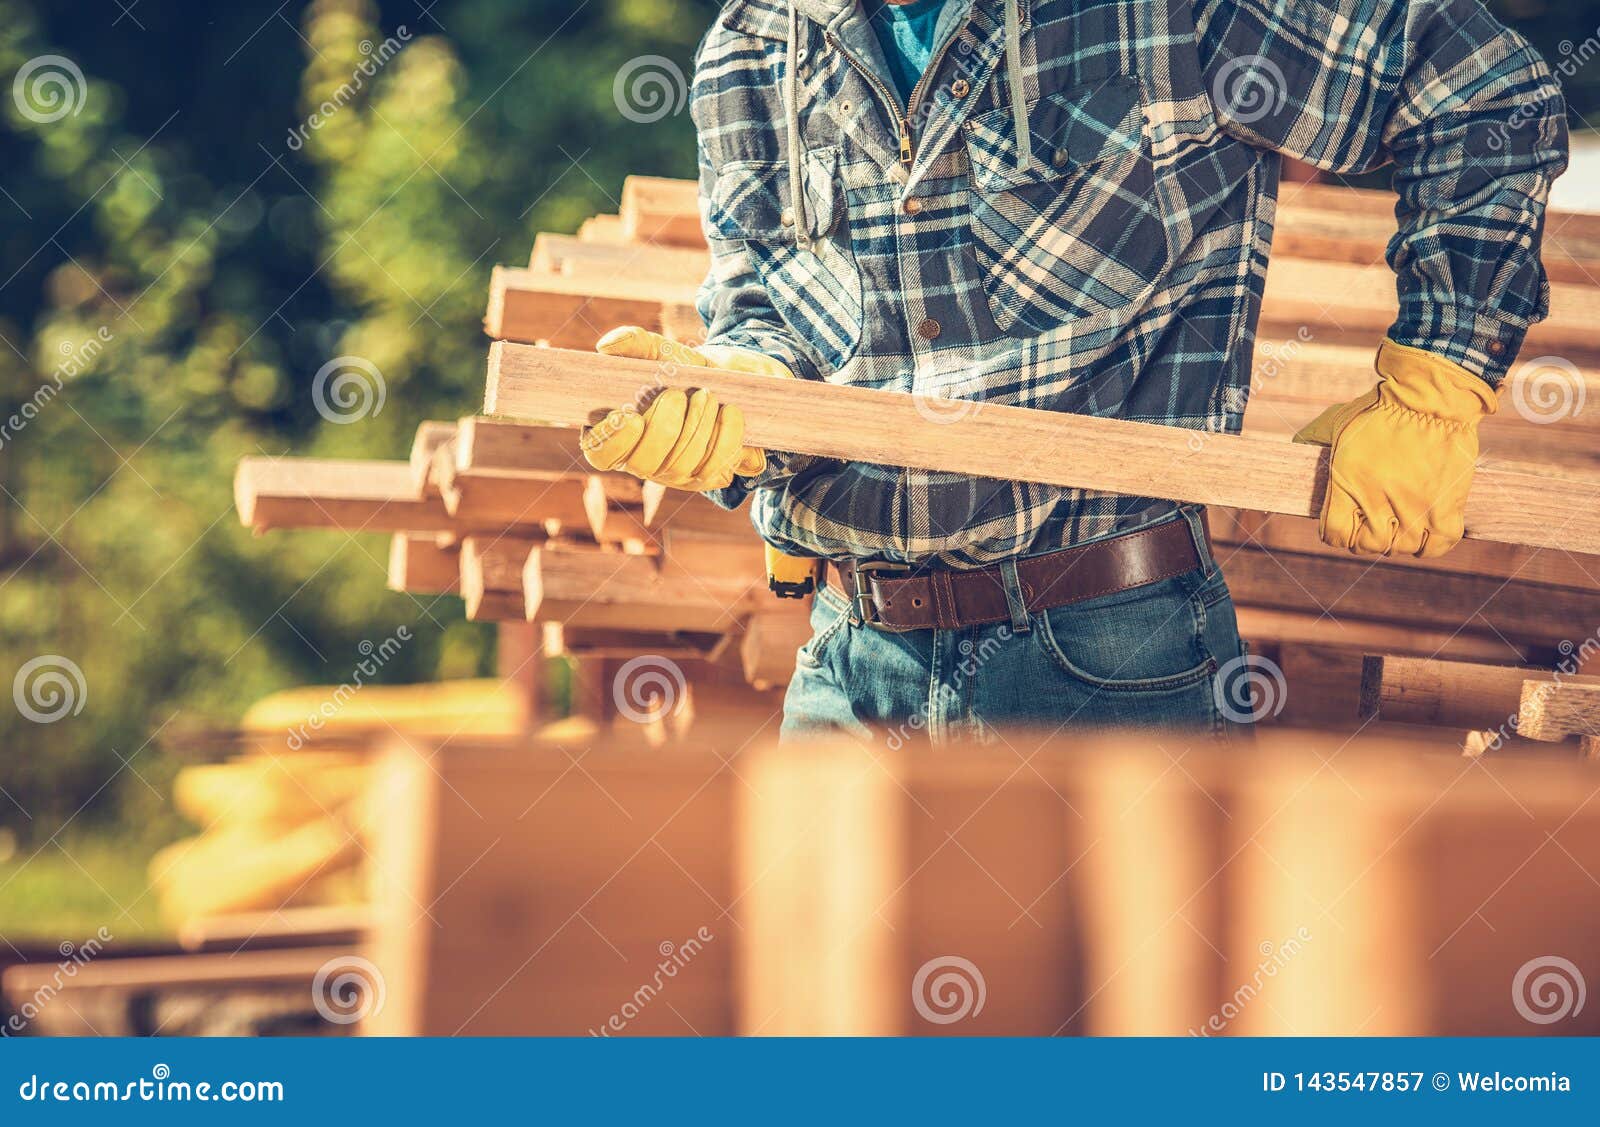 wood building material